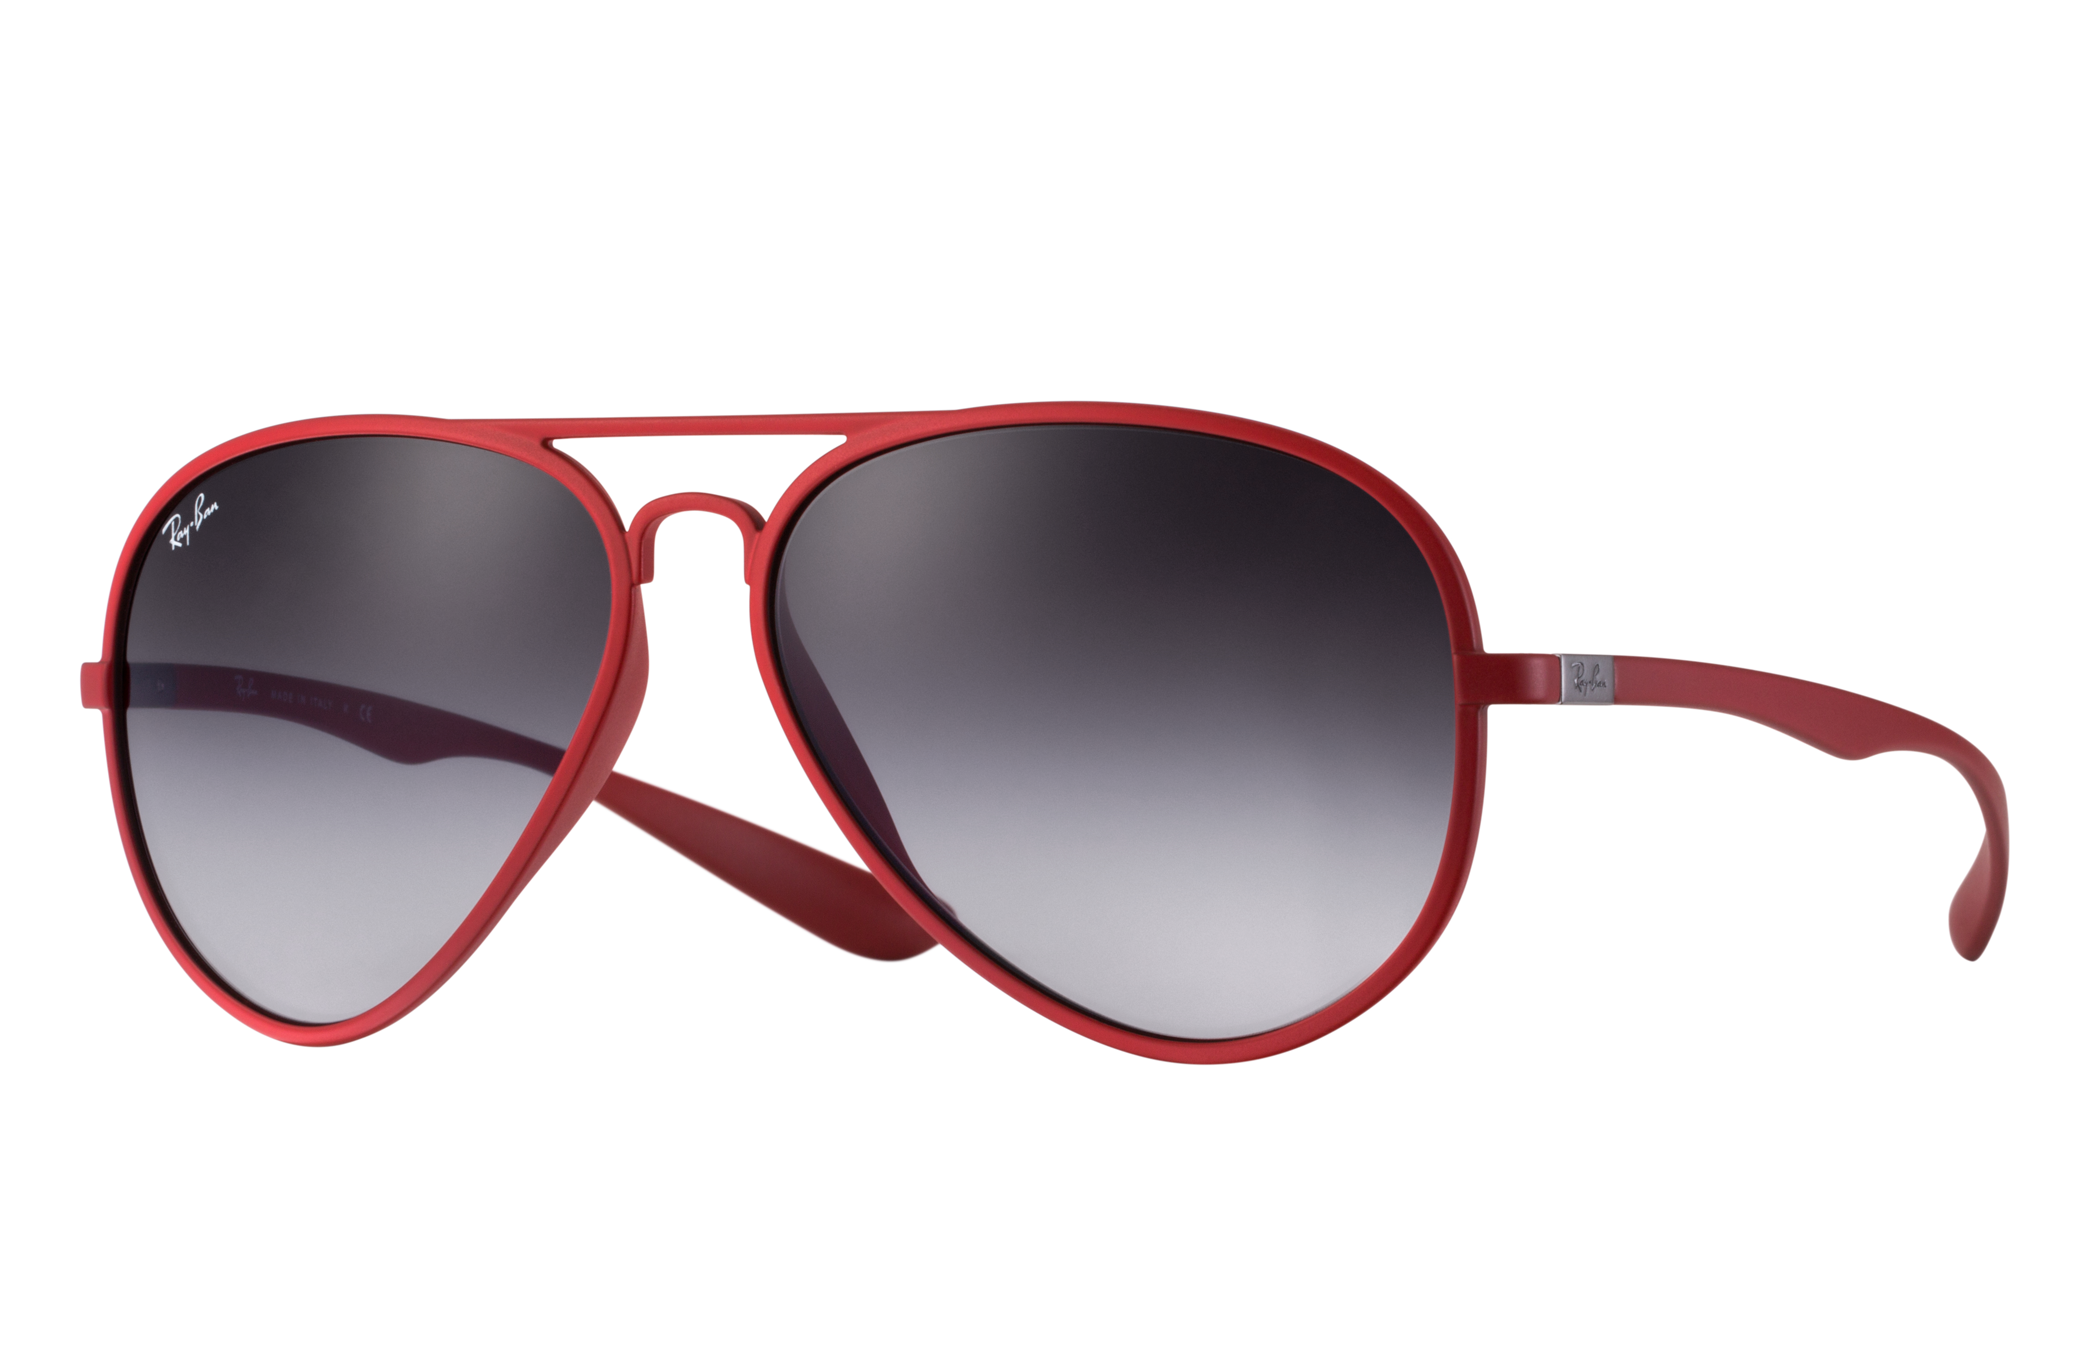 boom Eigenlijk bal Aviator Liteforce Sunglasses in Red and Grey | Ray-Ban®